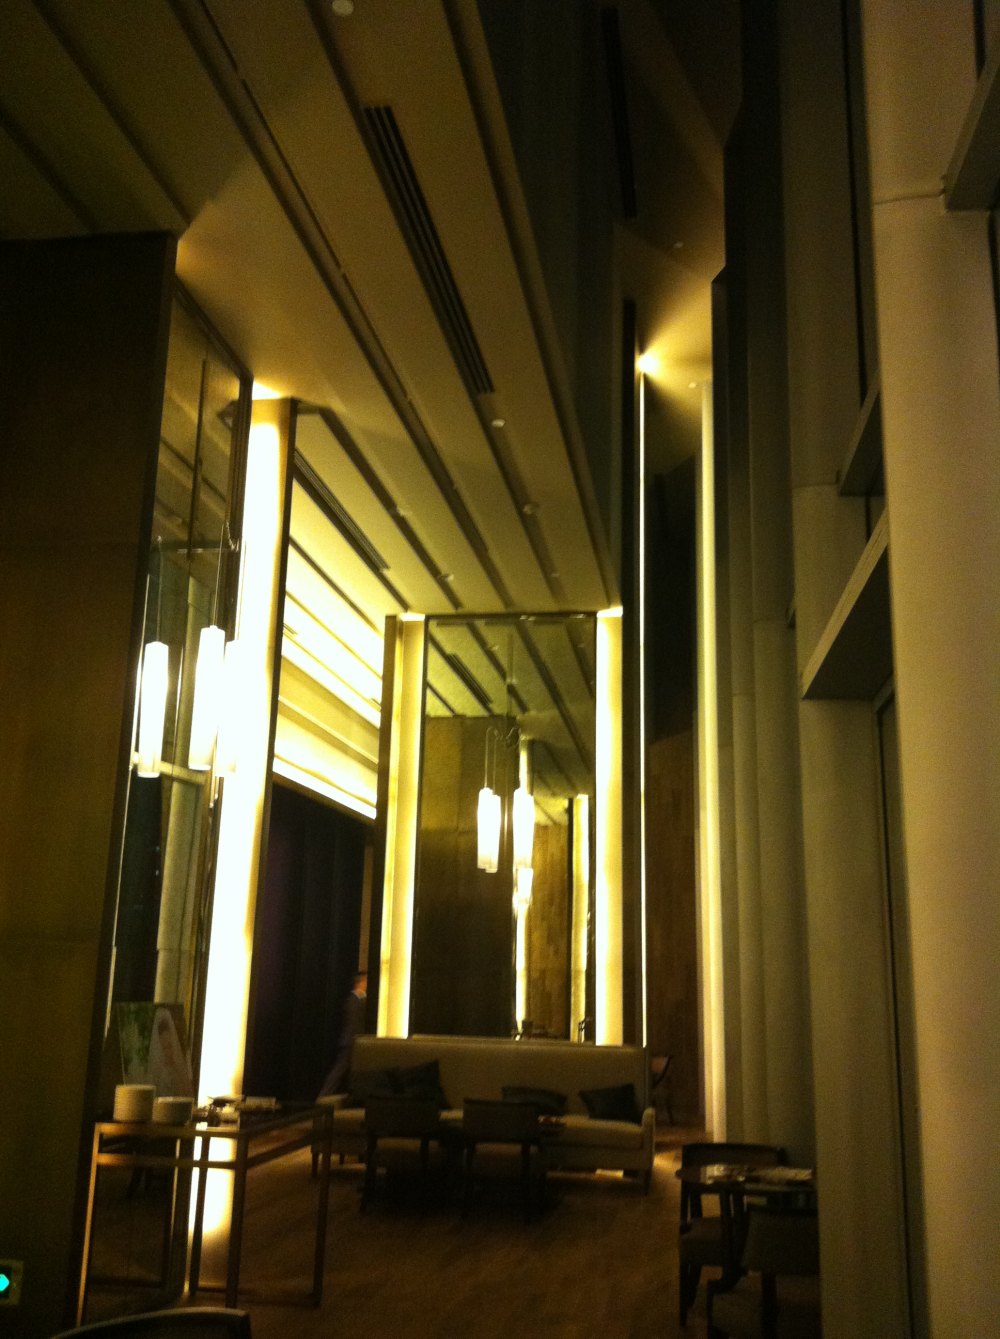 广州文华东方酒店(Mandarin Oriental Hotel)20130613第9页更新_IMG_5112.JPG